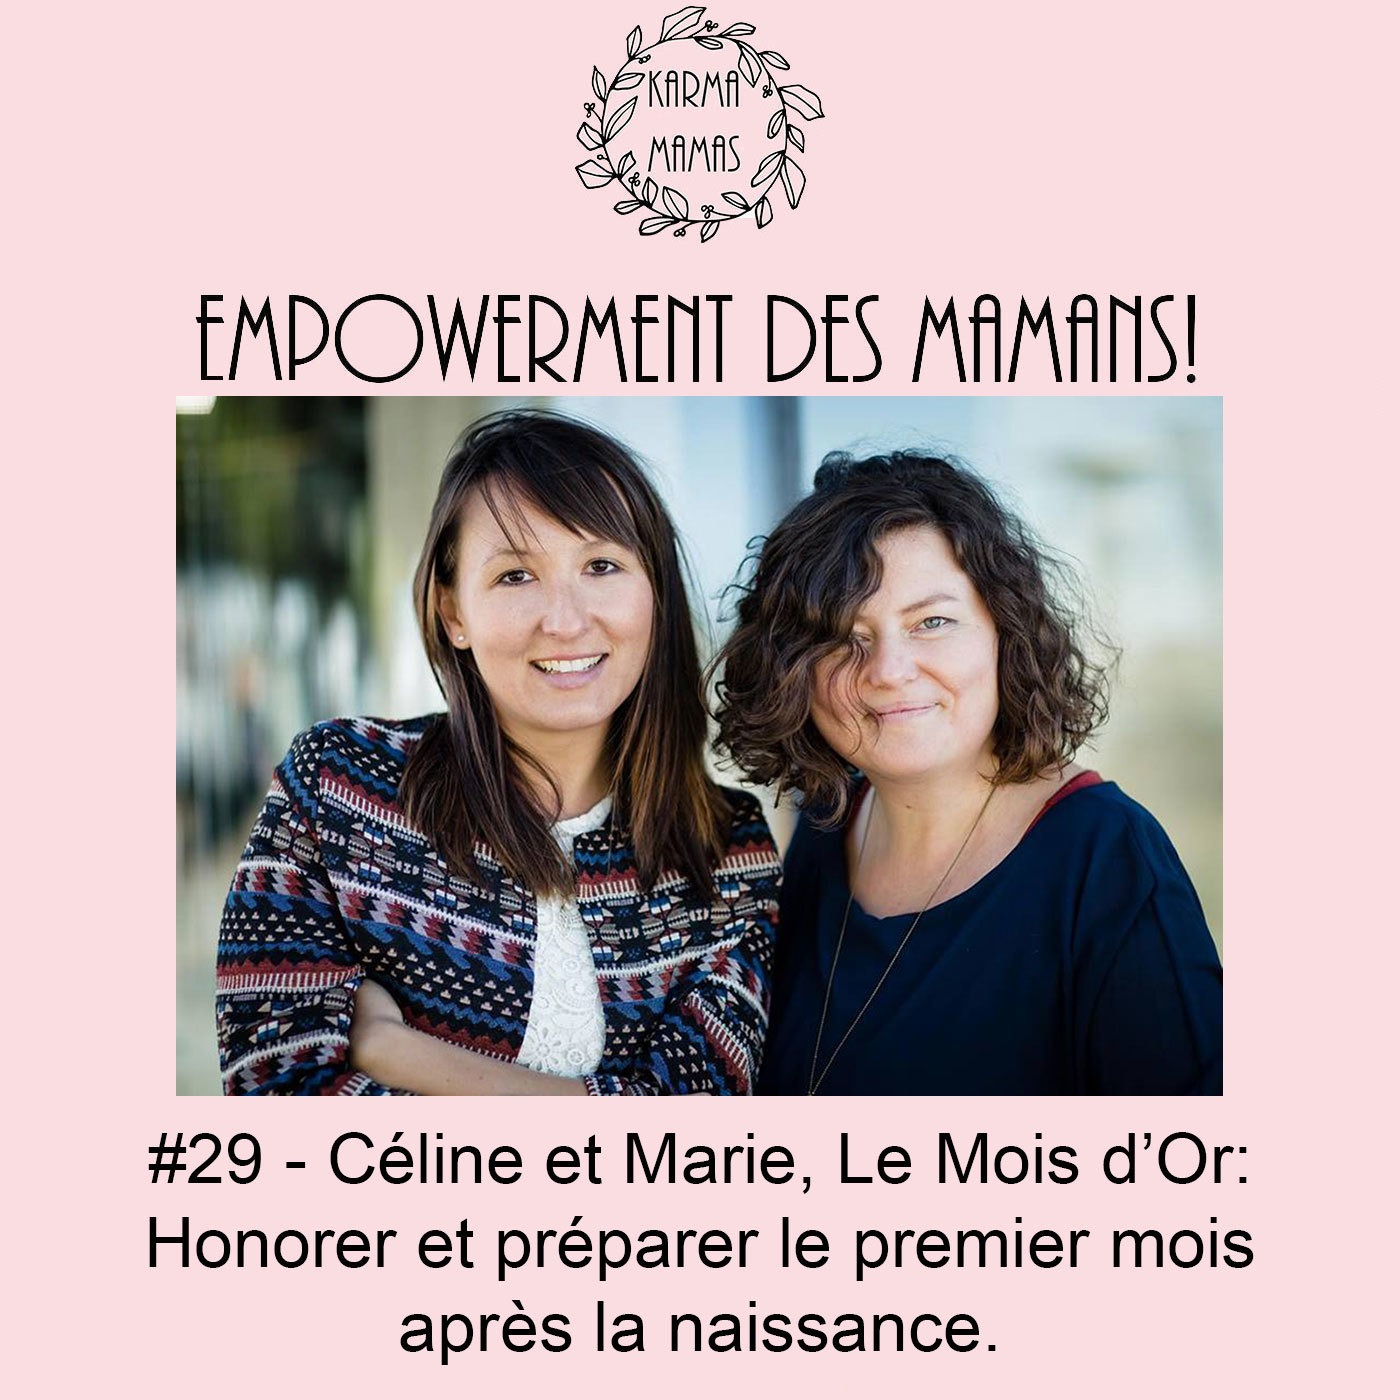 #29 - Céline et Marie, Le Mois d’Or: Honorer et préparer le premier mois après la naissance.